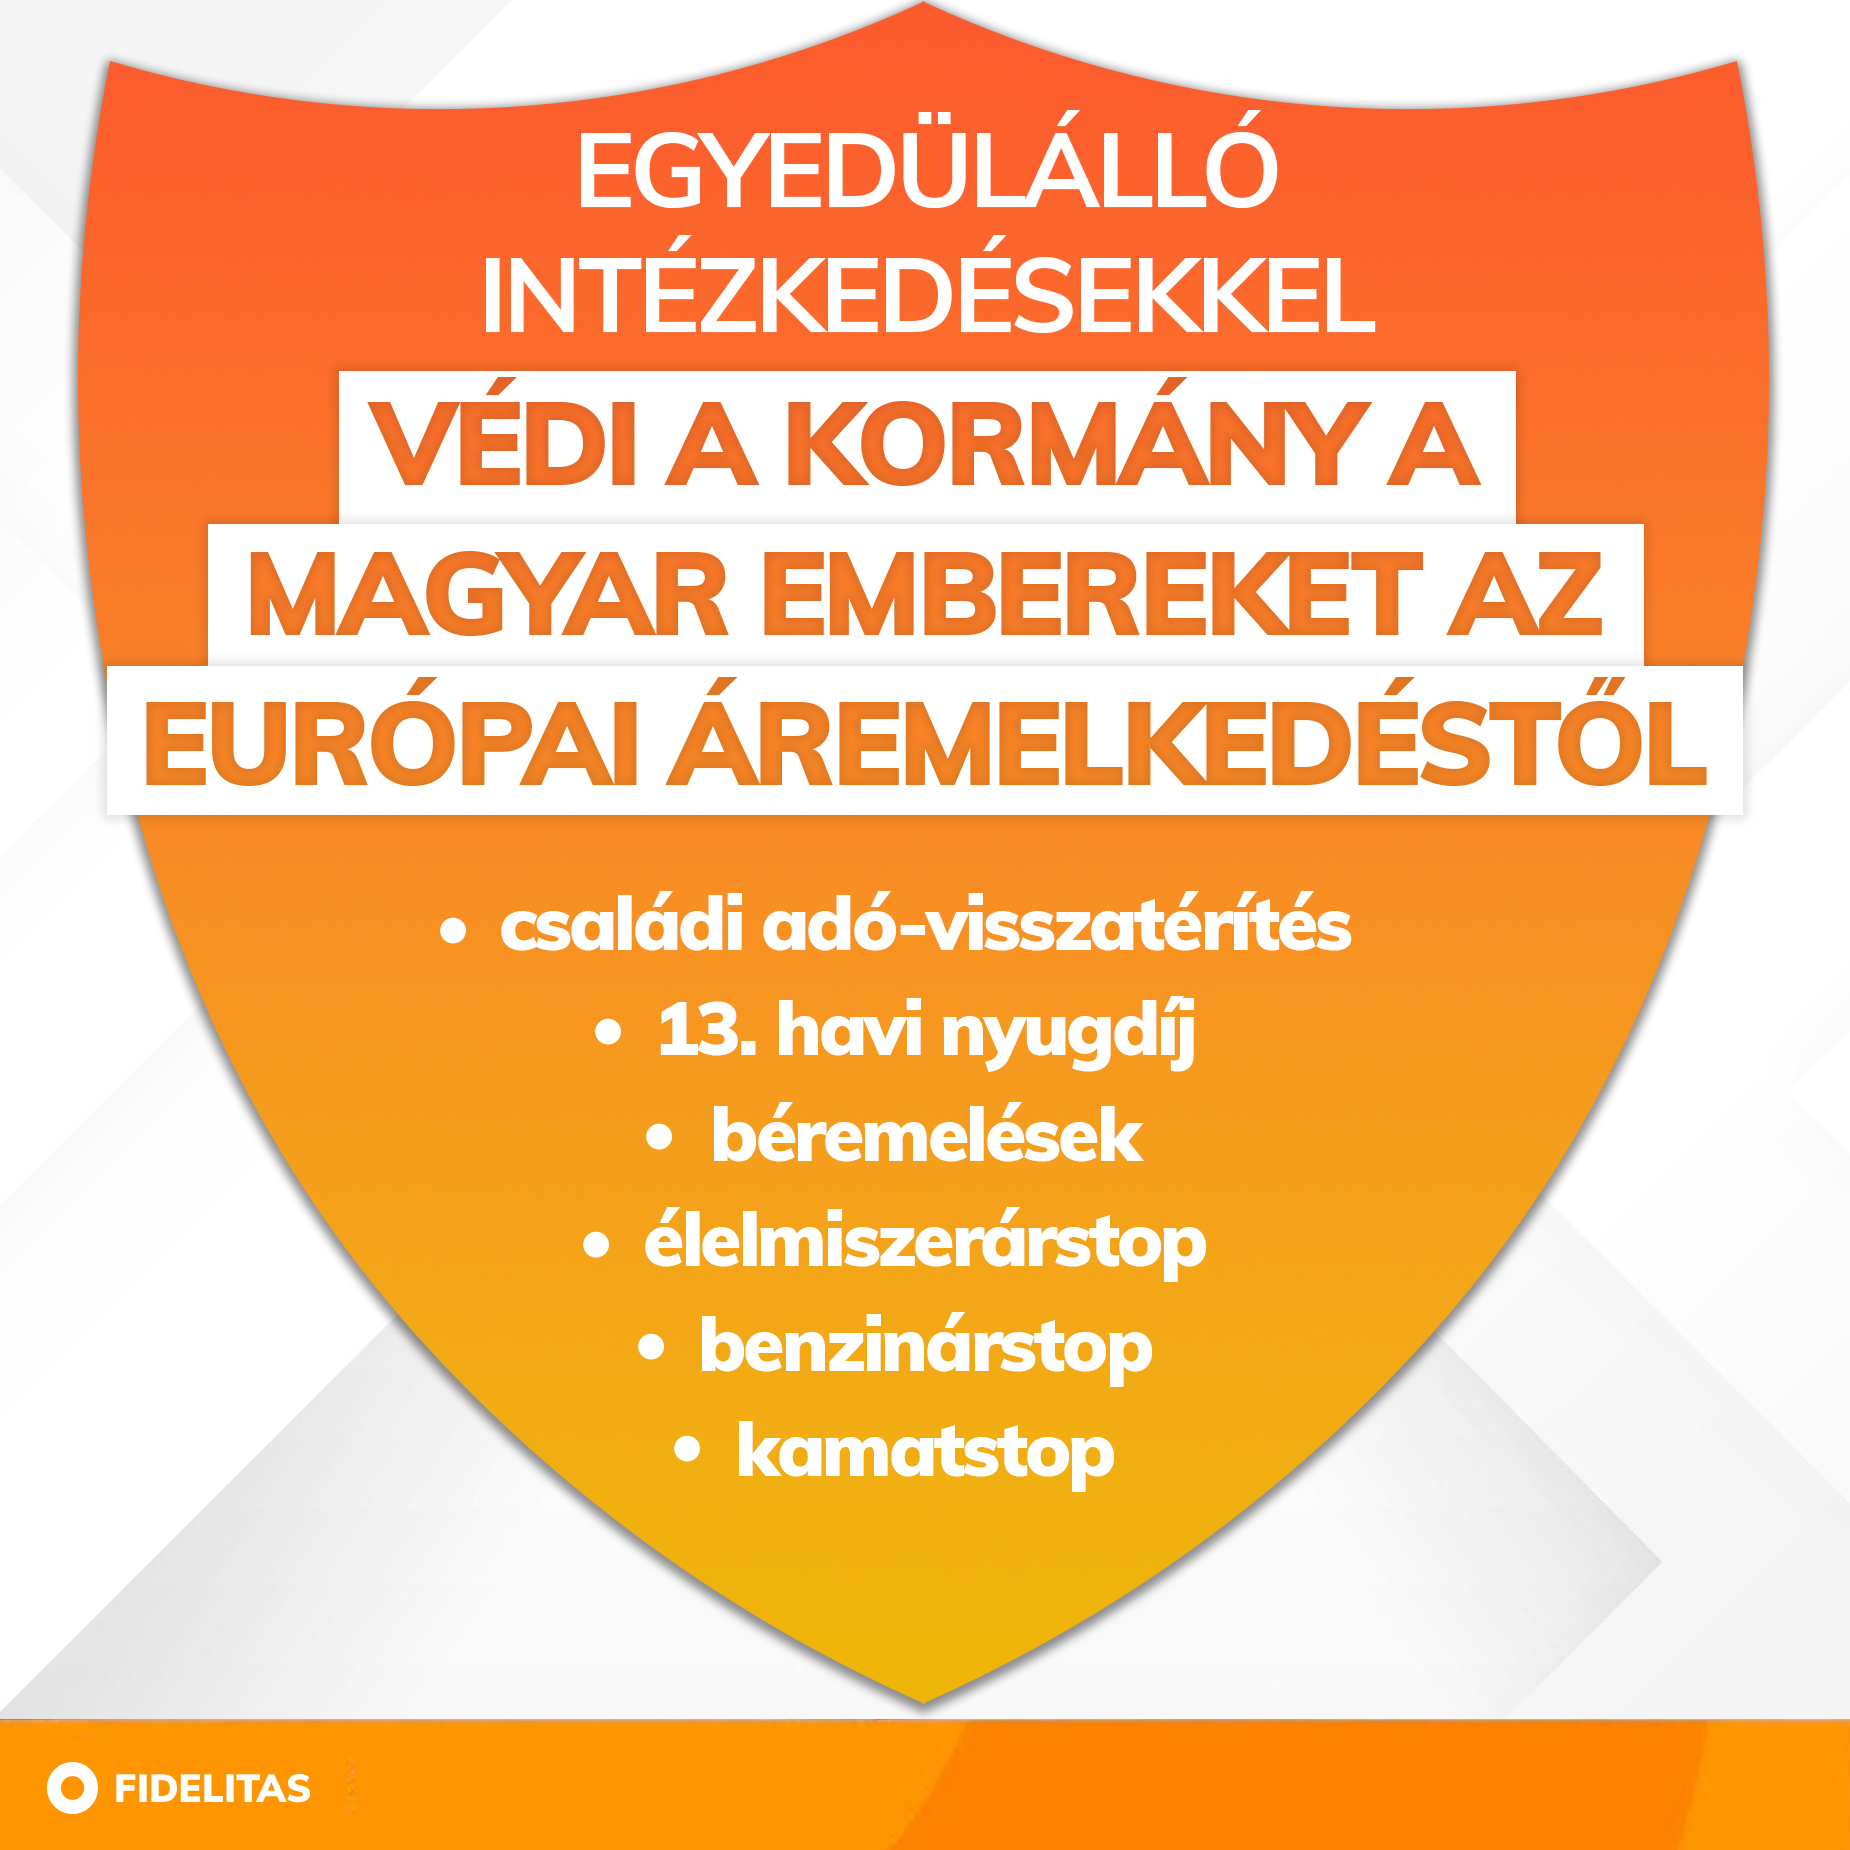 🛡 A magyar kormány egyedülálló intézkedésekkel védi az embereket az európai áremelkedéstől!